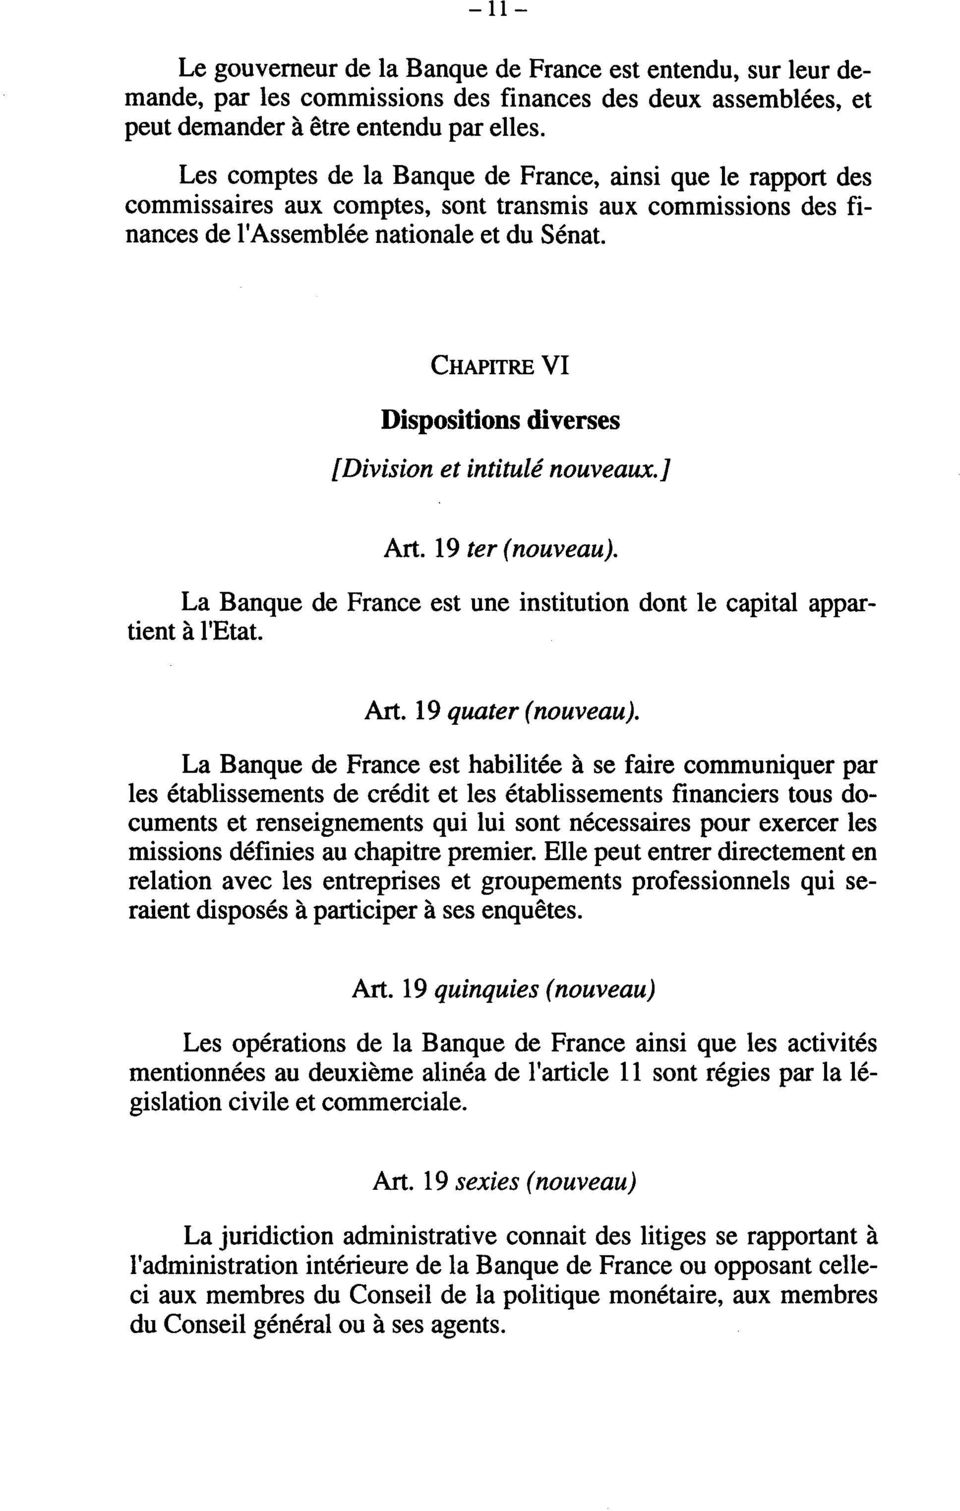 CHAPITRE VI Dispositions diverses [Division et intitulé nouveaux.] Art. 19 ter (nouveau). La Banque de France est une institution dont le capital appartient à l'etat. Art. 19 quater (nouveau).